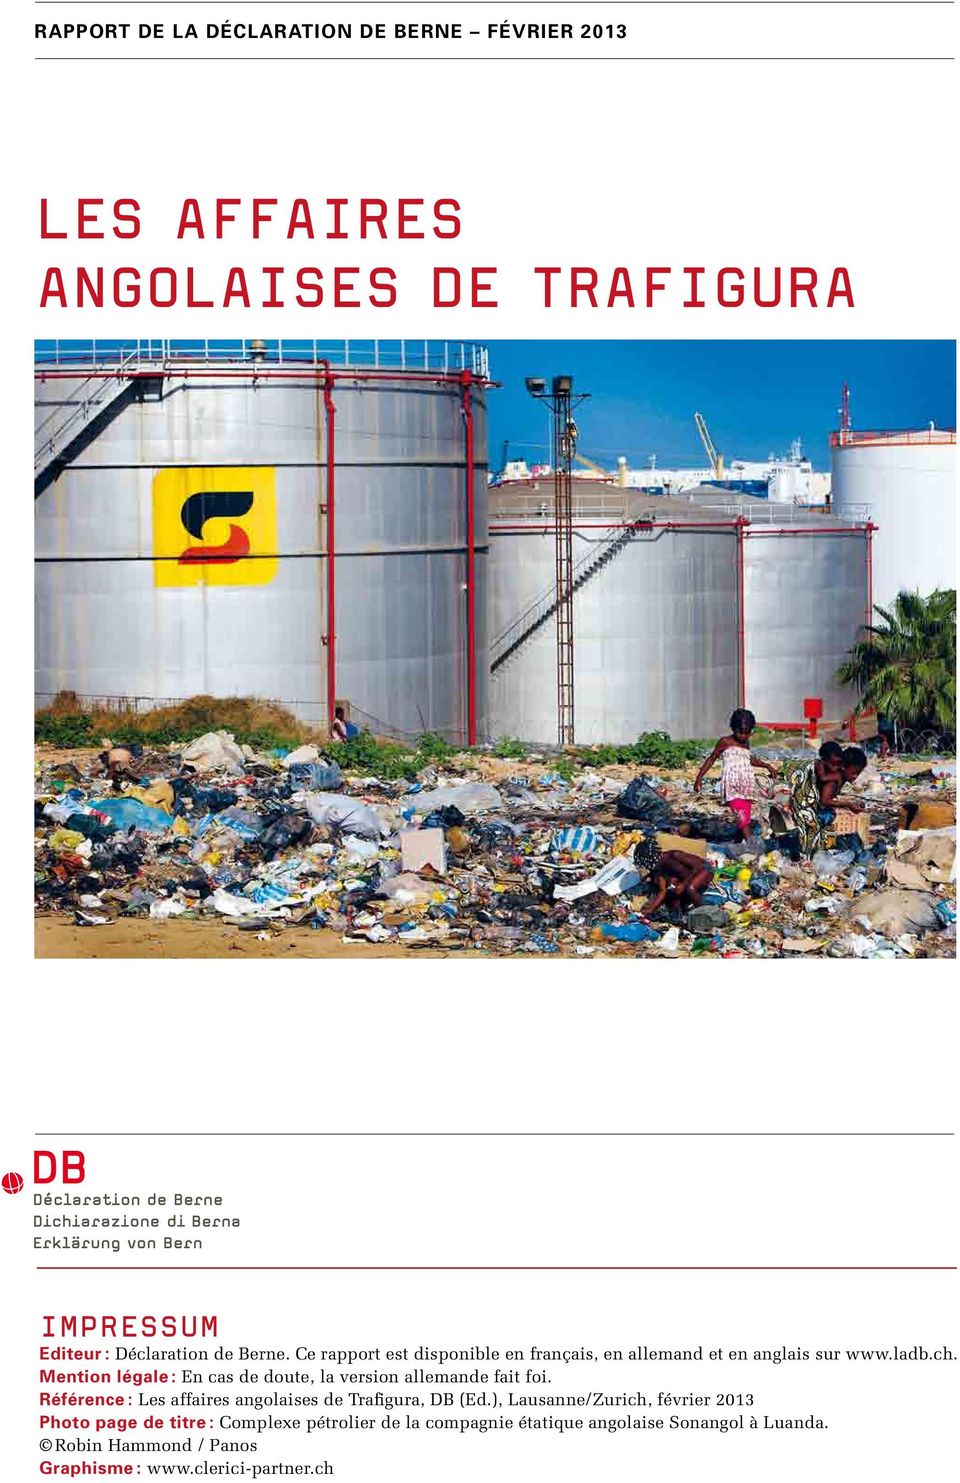 Mention légale : En cas de doute, la version allemande fait foi. Référence : Les affaires angolaises de Trafigura, DB (Ed.